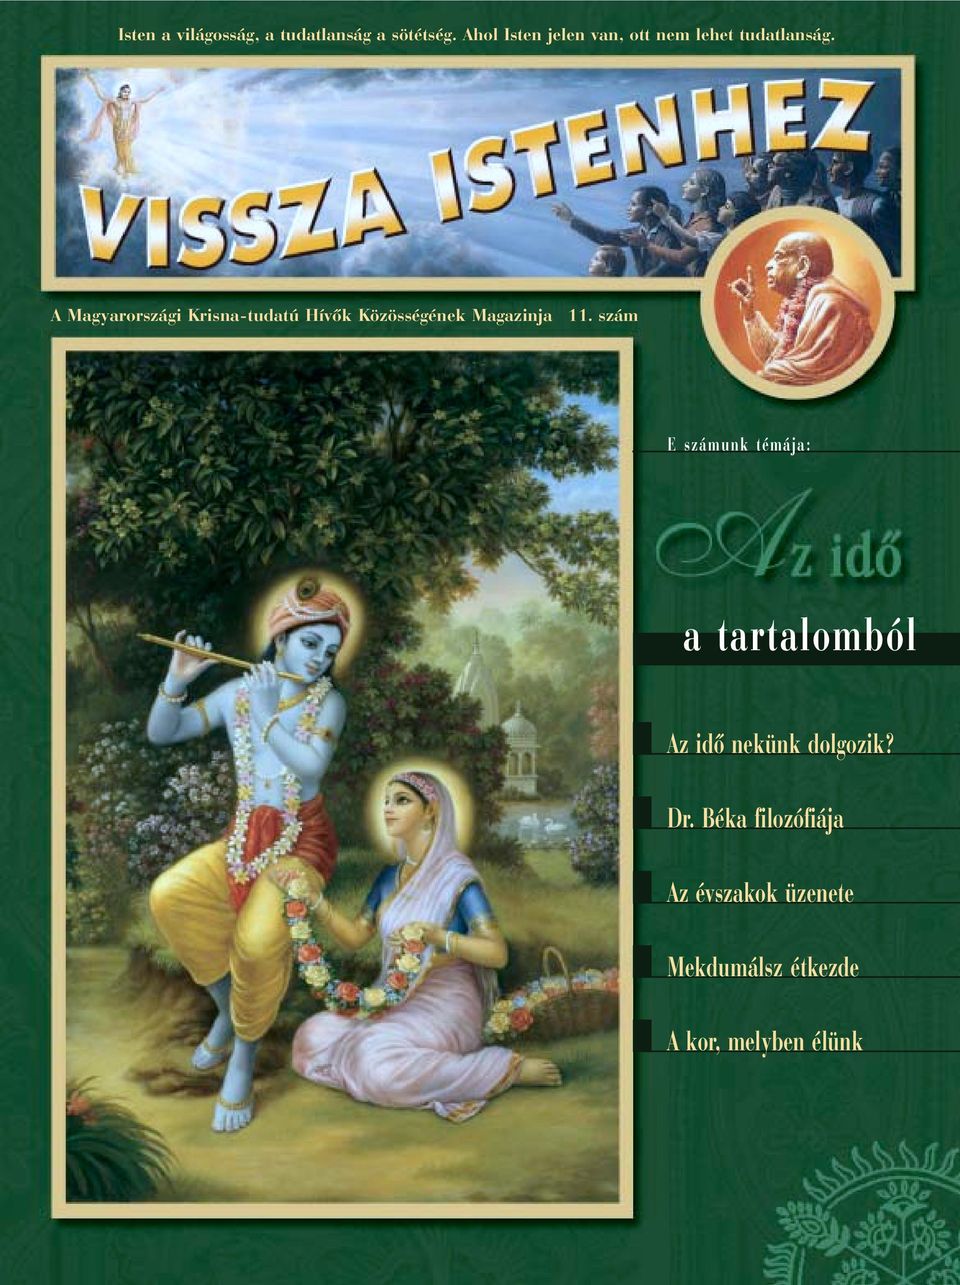 A Magyarországi Krisna-tudatú Hívõk Közösségének Magazinja 11.